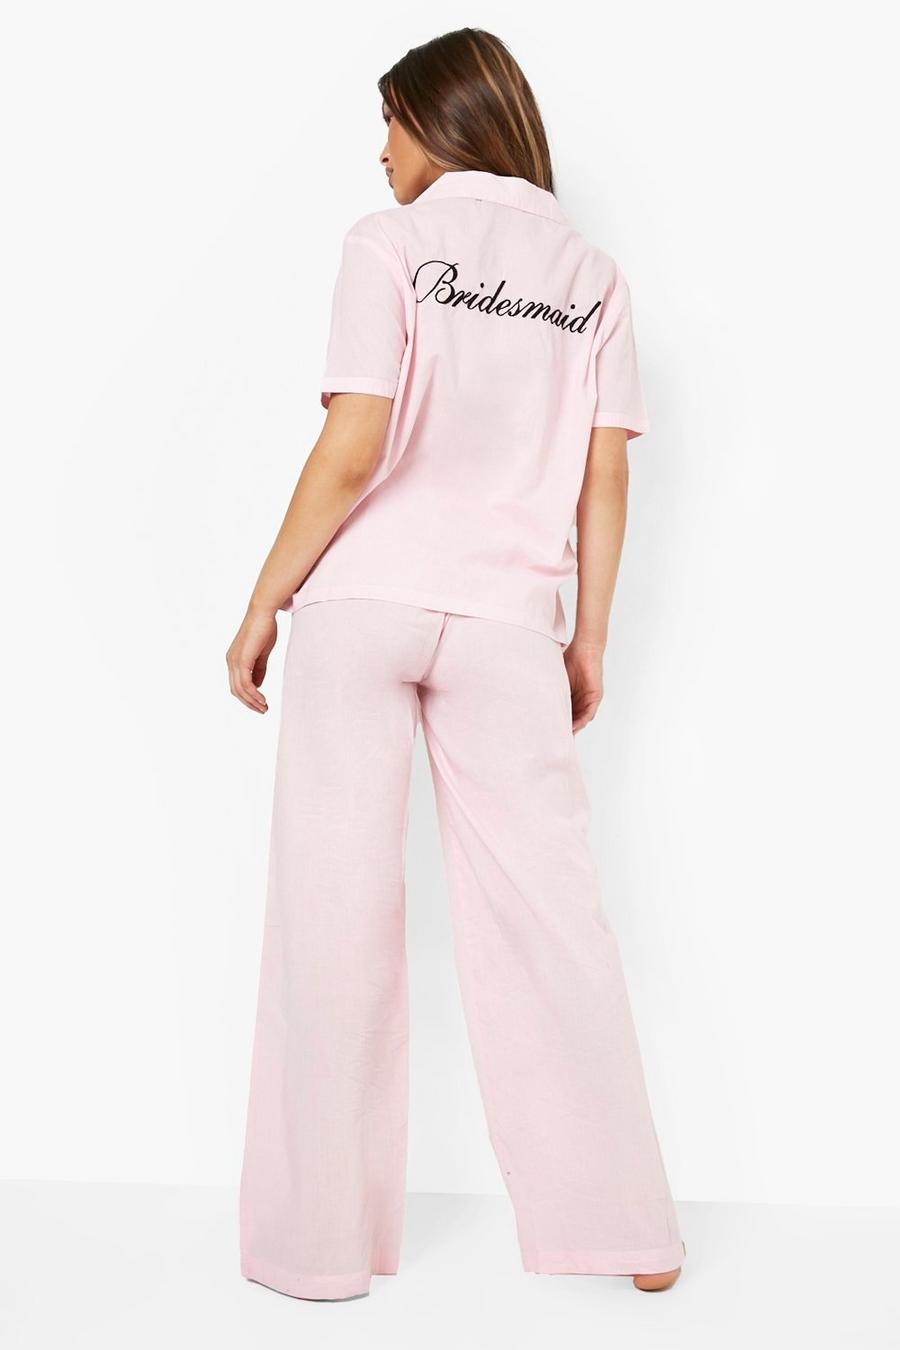 Set pantaloni in cotone con ricamo Bridesmaid, Blush rosa